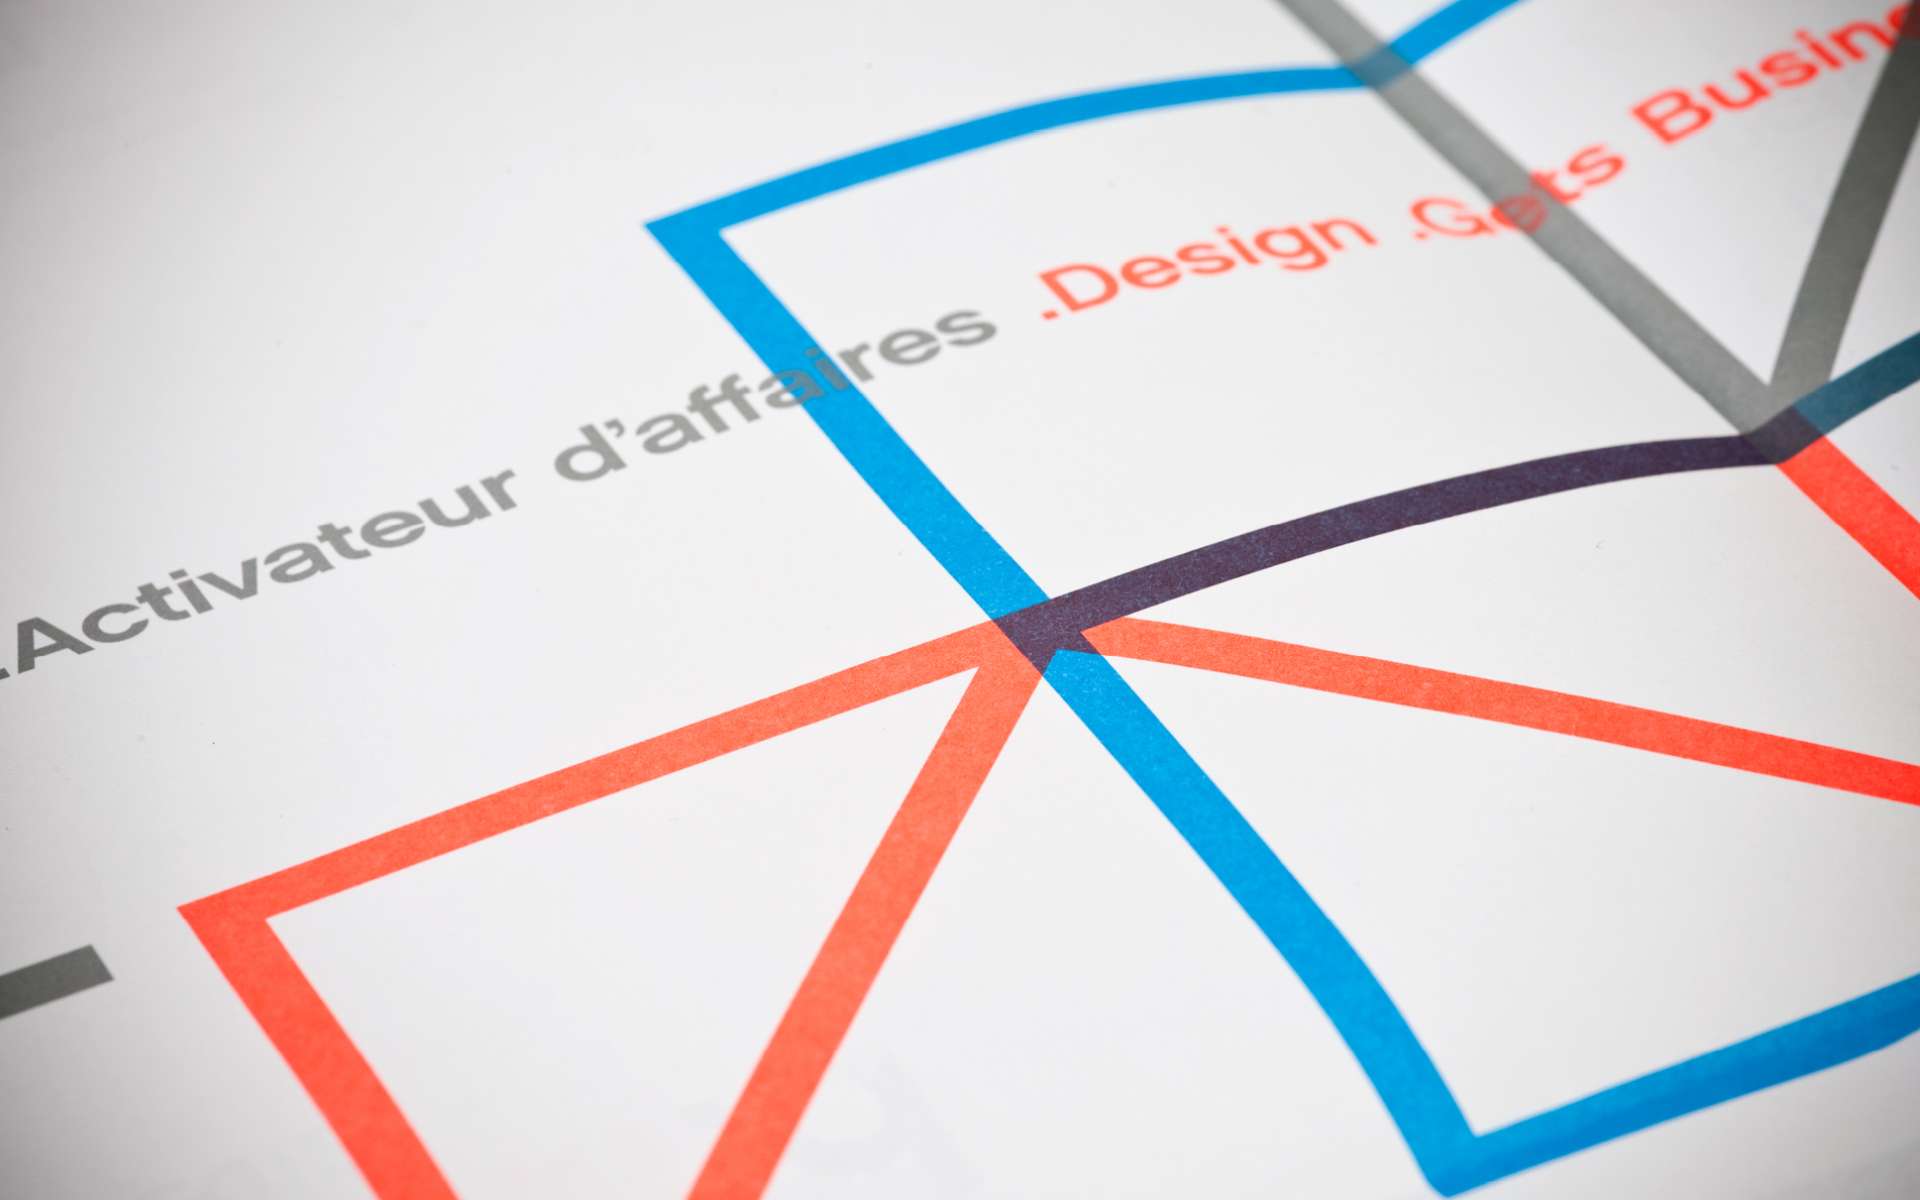 Mission Design - Facteur D, événement 2012